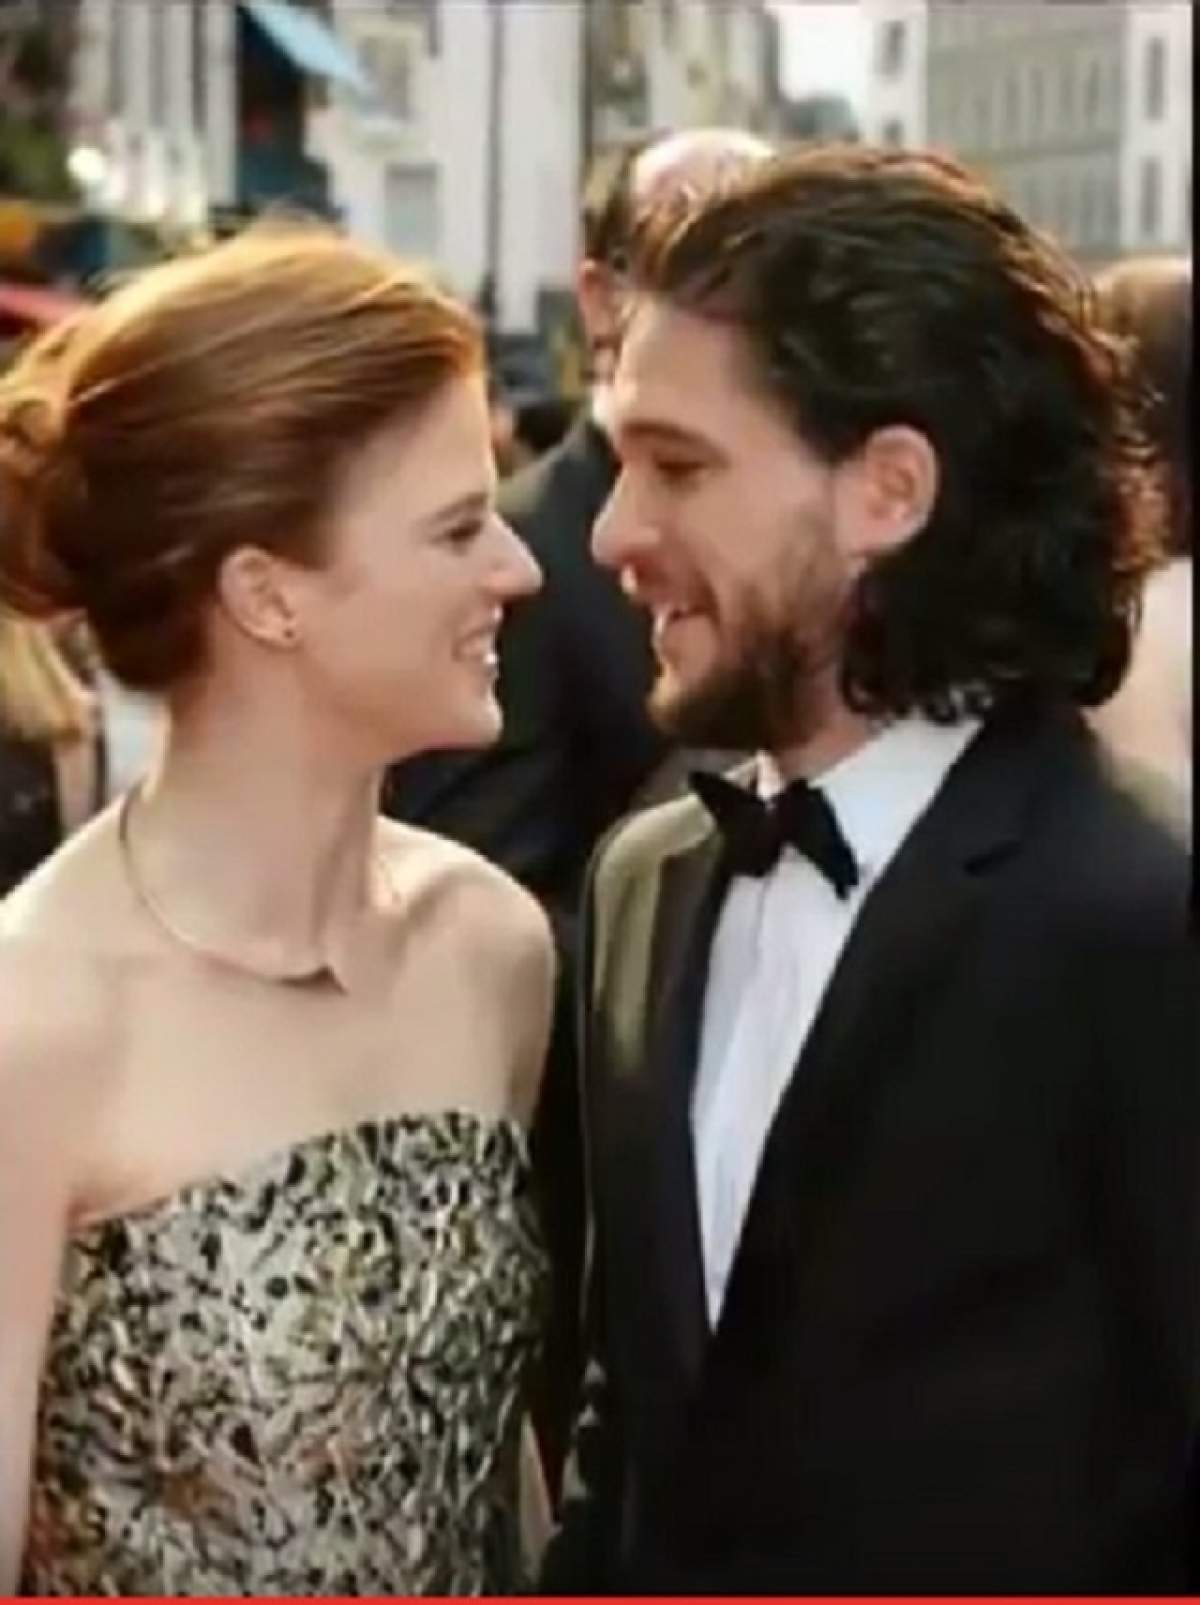 Jon Snow şi Ygritte sunt OFICIAL un cuplu în spatele camerelor de filmat. S-au sărutat şi au râs încontinuu pe covorul roşu!